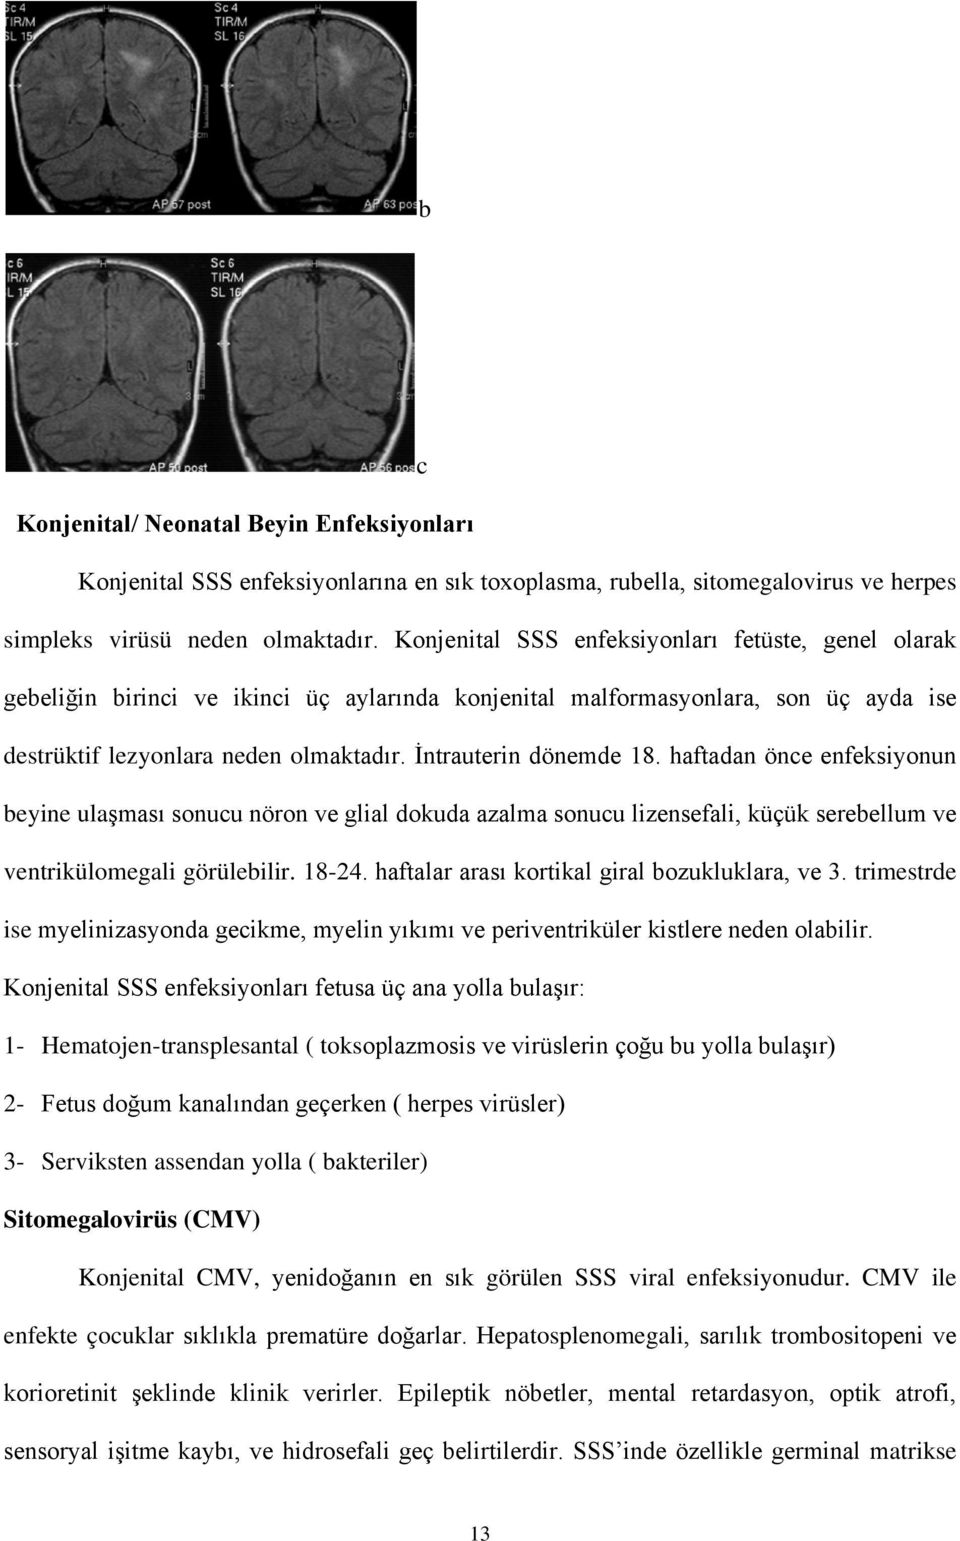 İntrauterin dönemde 18. haftadan önce enfeksiyonun beyine ulaşması sonucu nöron ve glial dokuda azalma sonucu lizensefali, küçük serebellum ve ventrikülomegali görülebilir. 18-24.